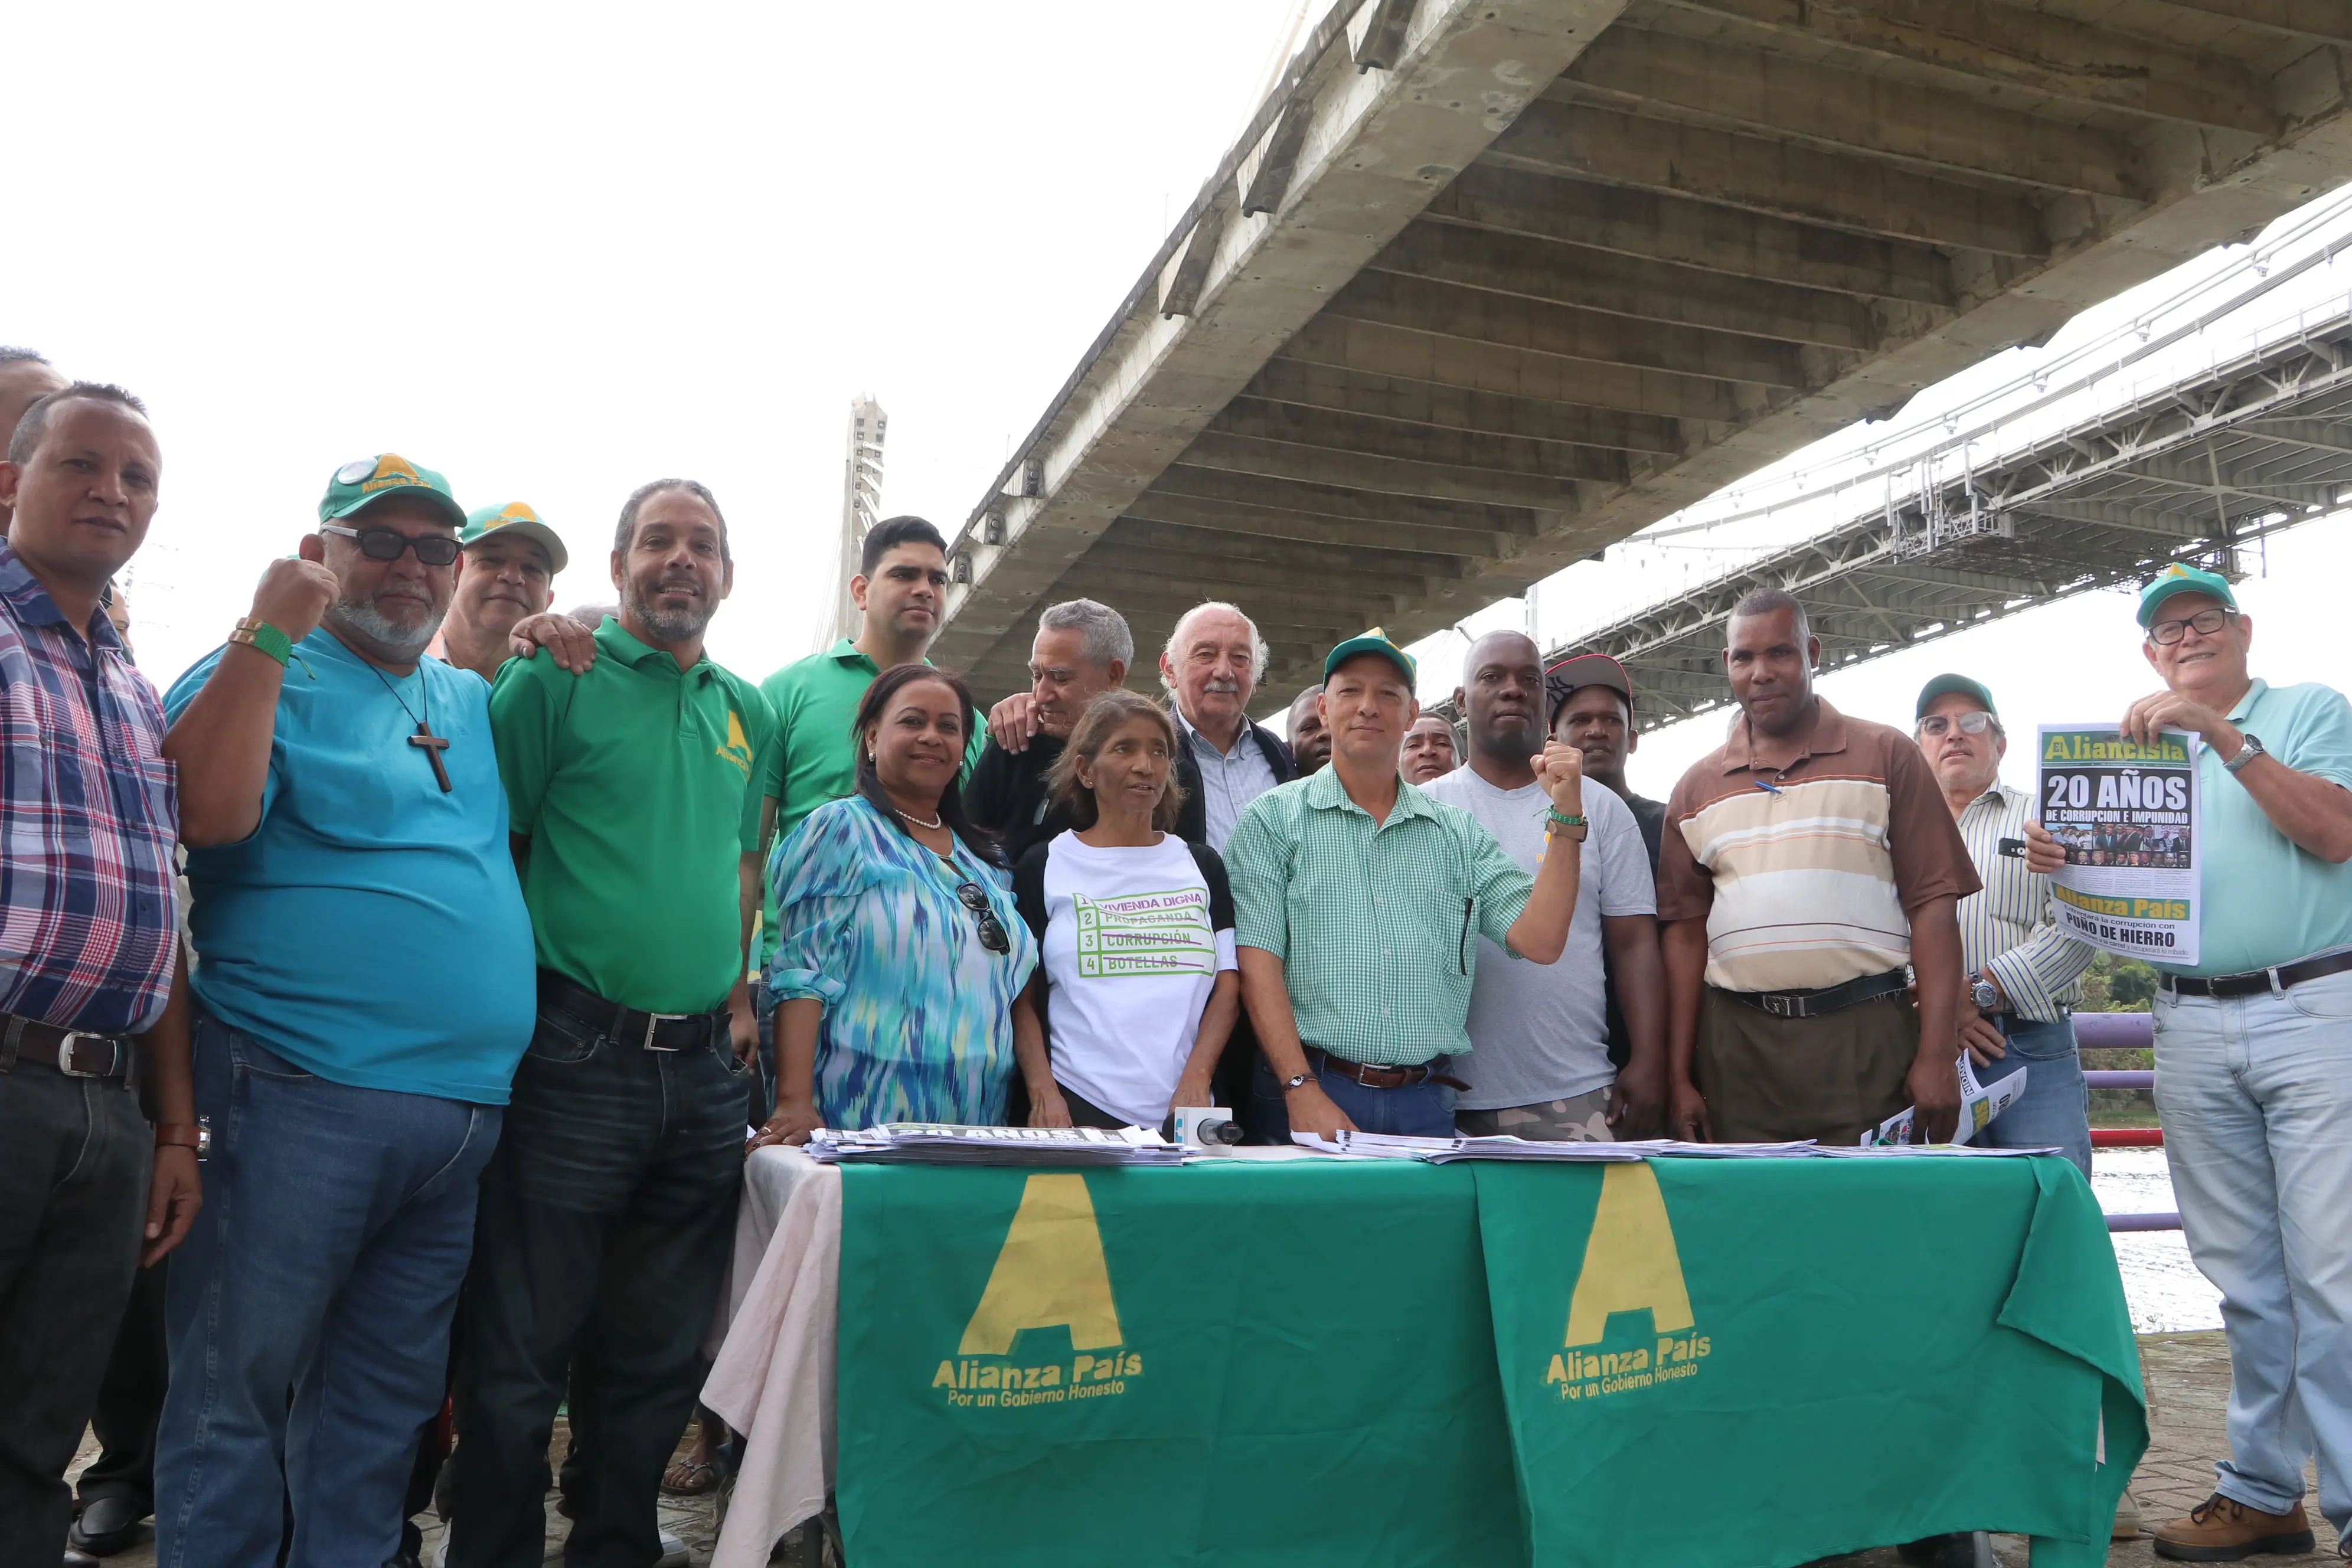 Alianza País respalda resistencia de comunitarios de Domingo Savio a ser desalojados